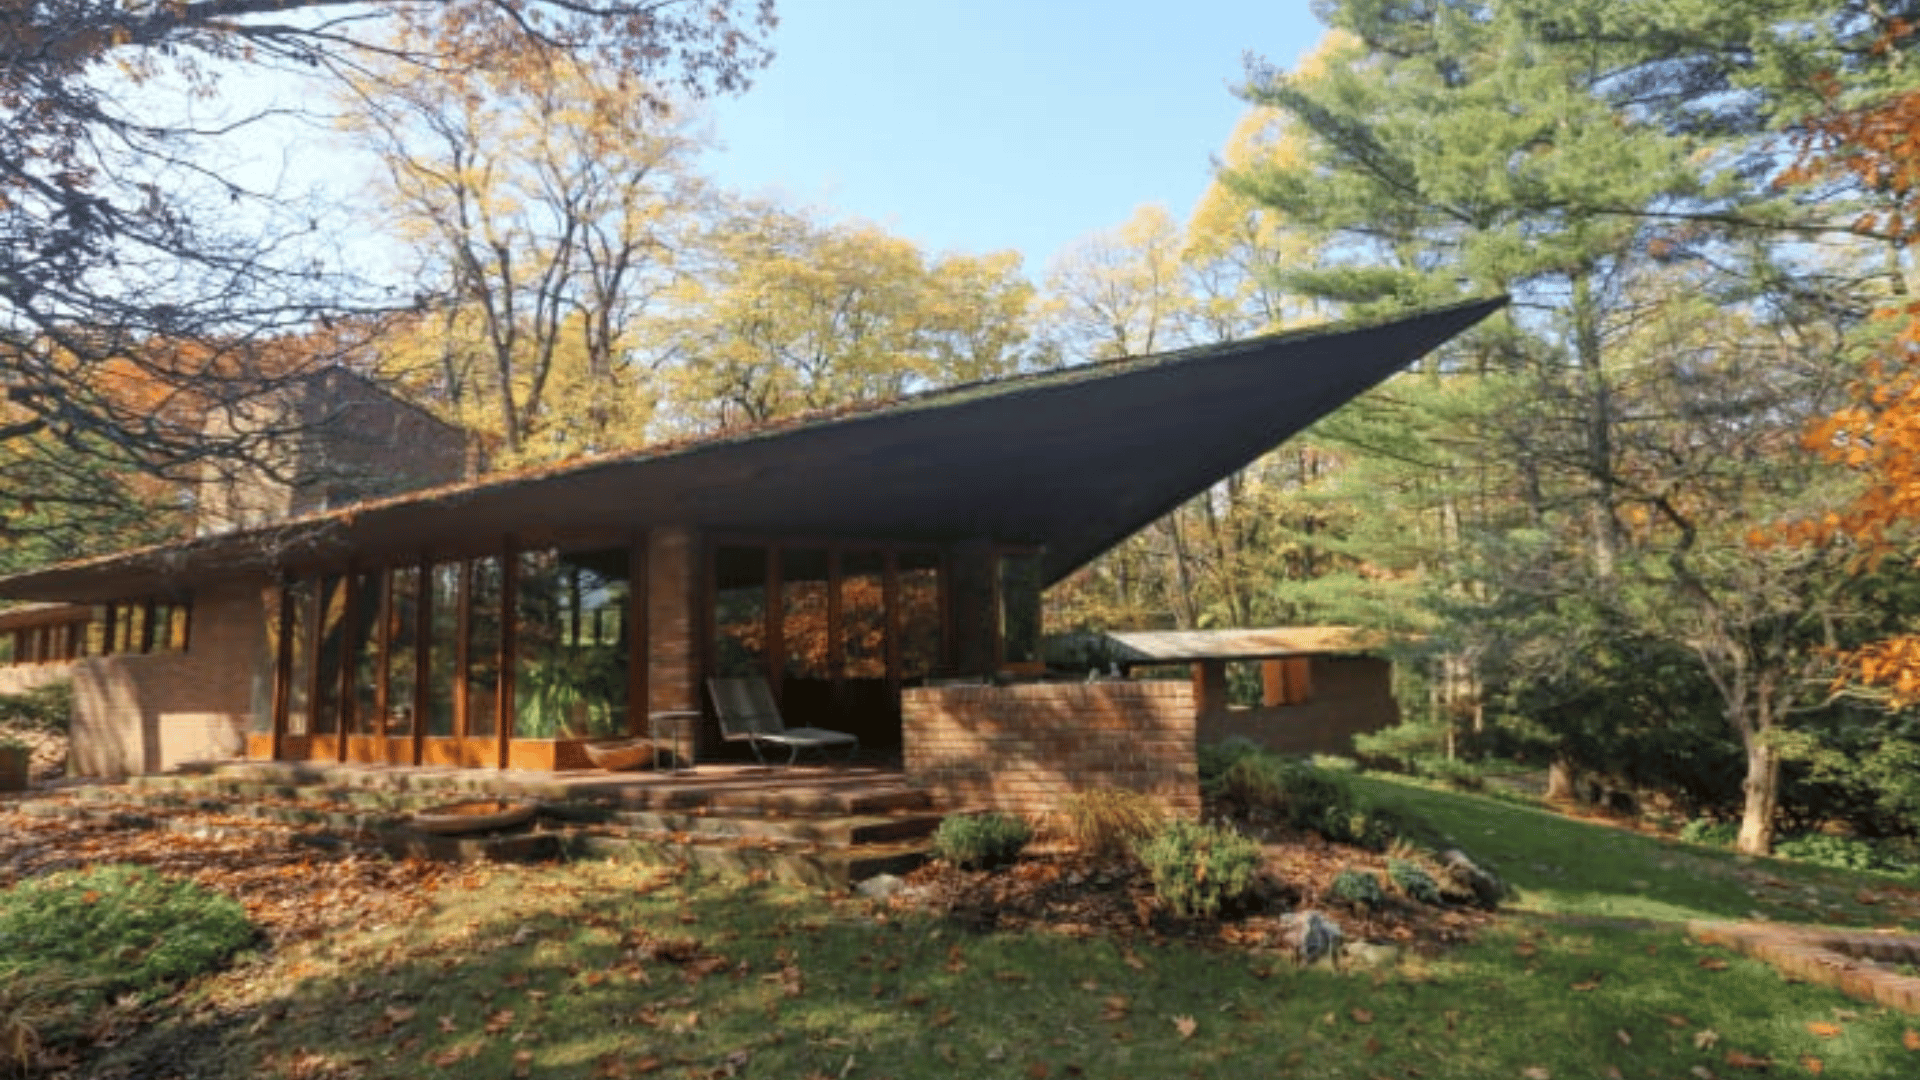 Frank Lloyd Wright’s Palmer House - Ann Arbor, Michigan